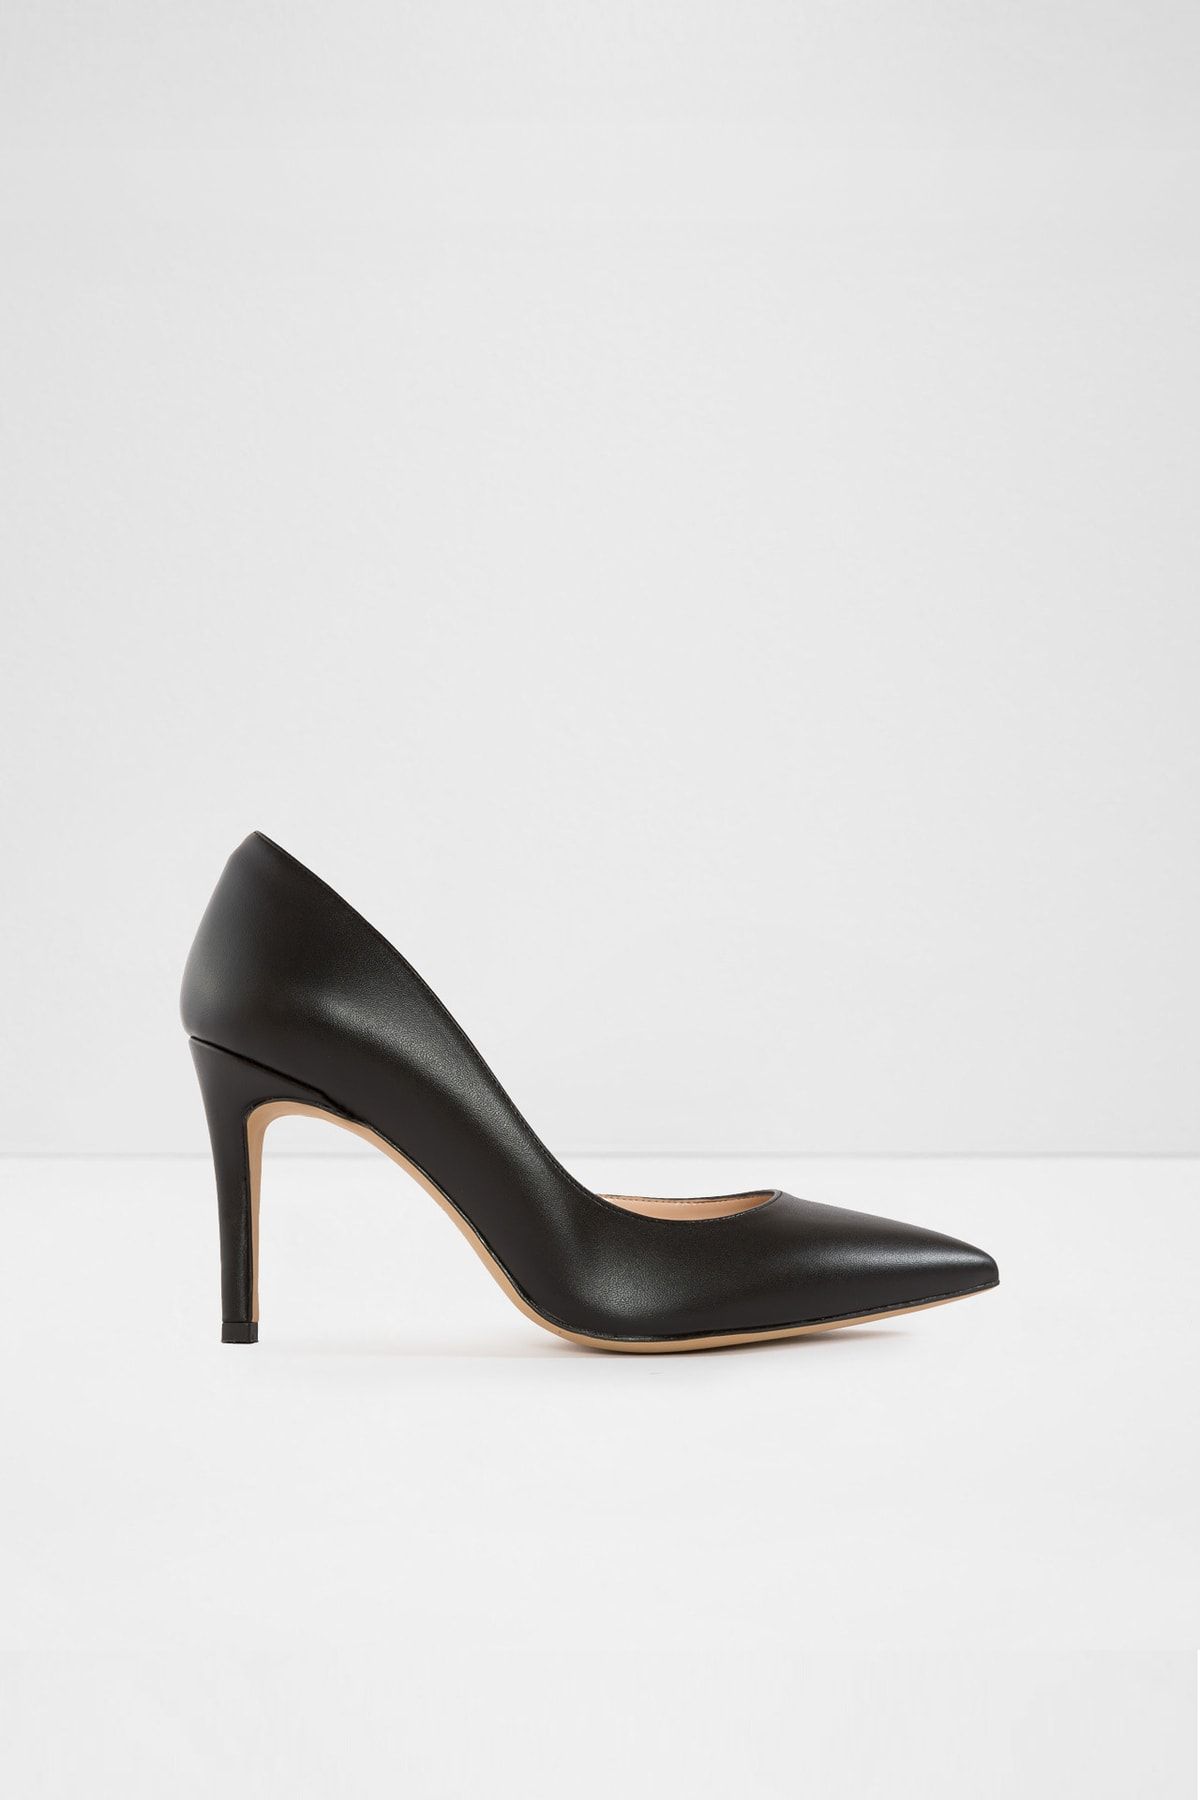 Aldo Novara-tr - Siyah Kadın Topuklu Ayakkabı